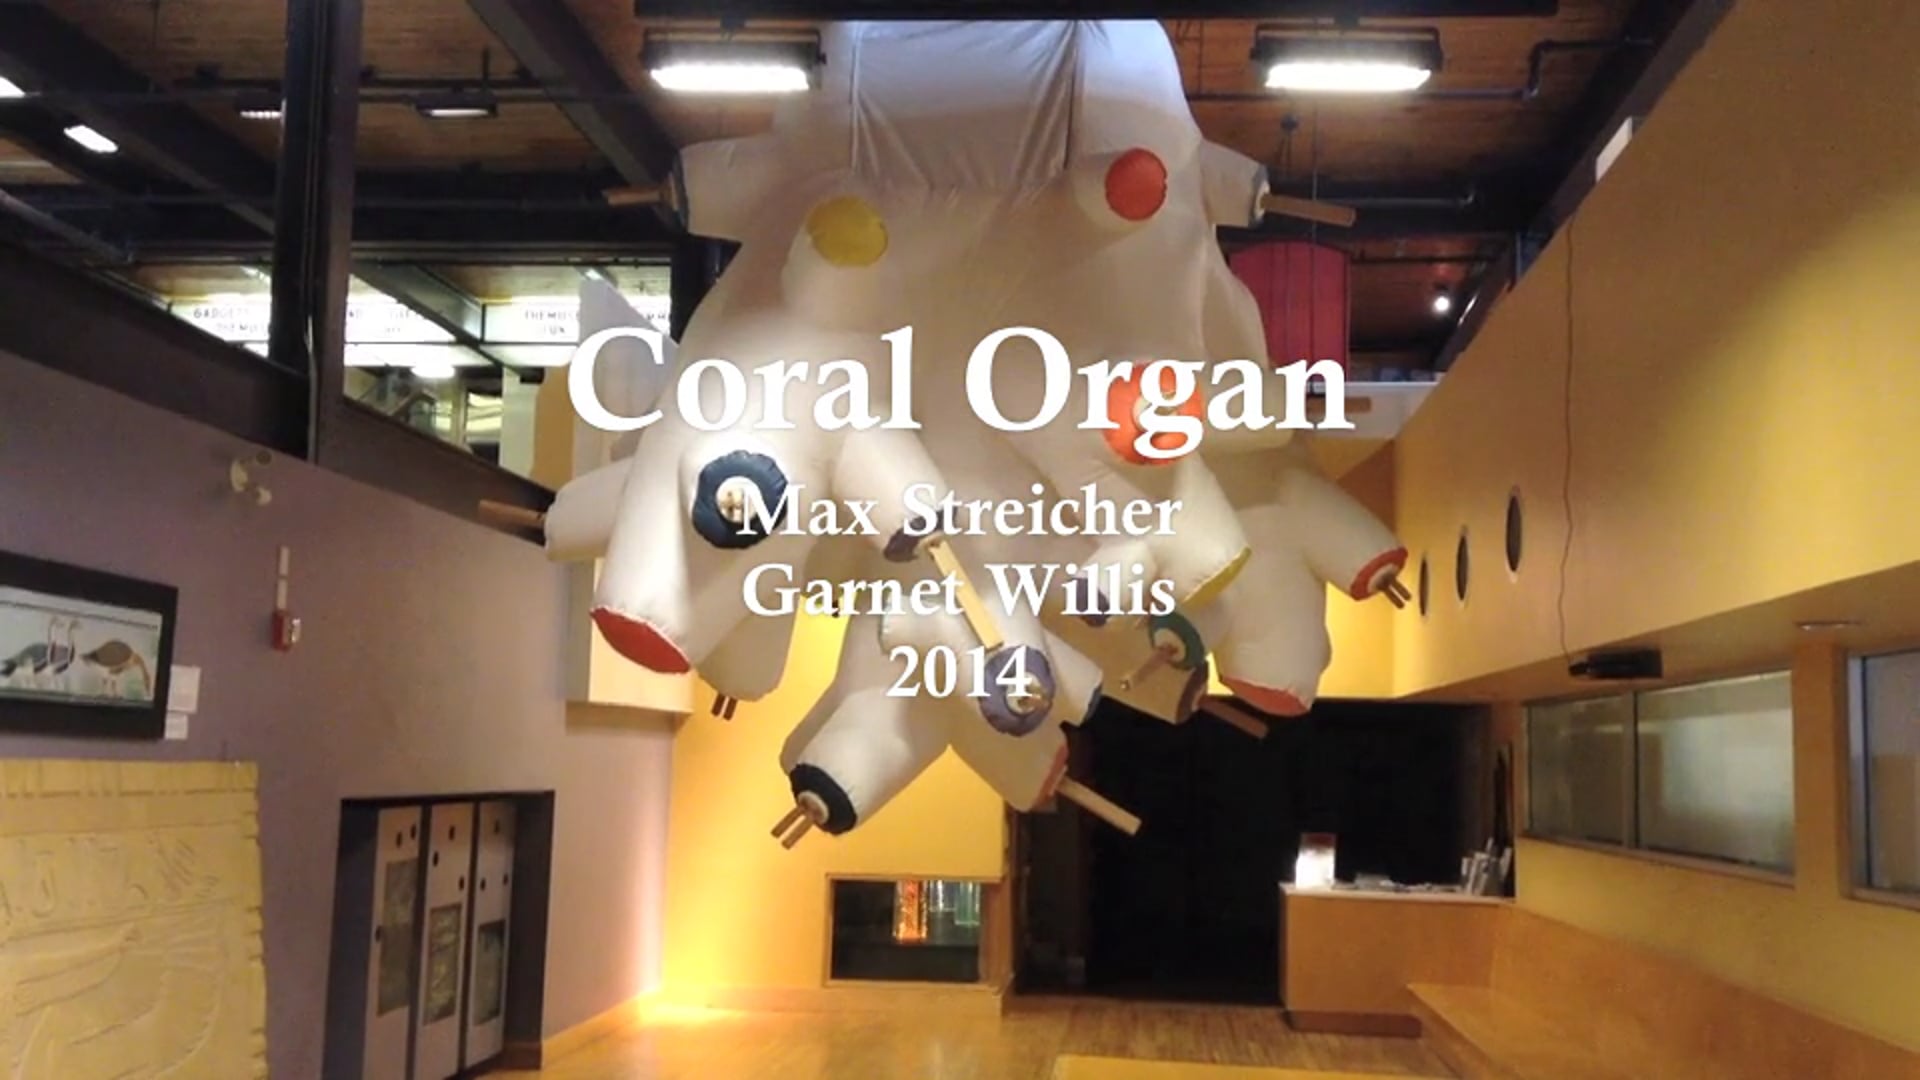 Coral Organ (Garnet Willis and Max Streicher)